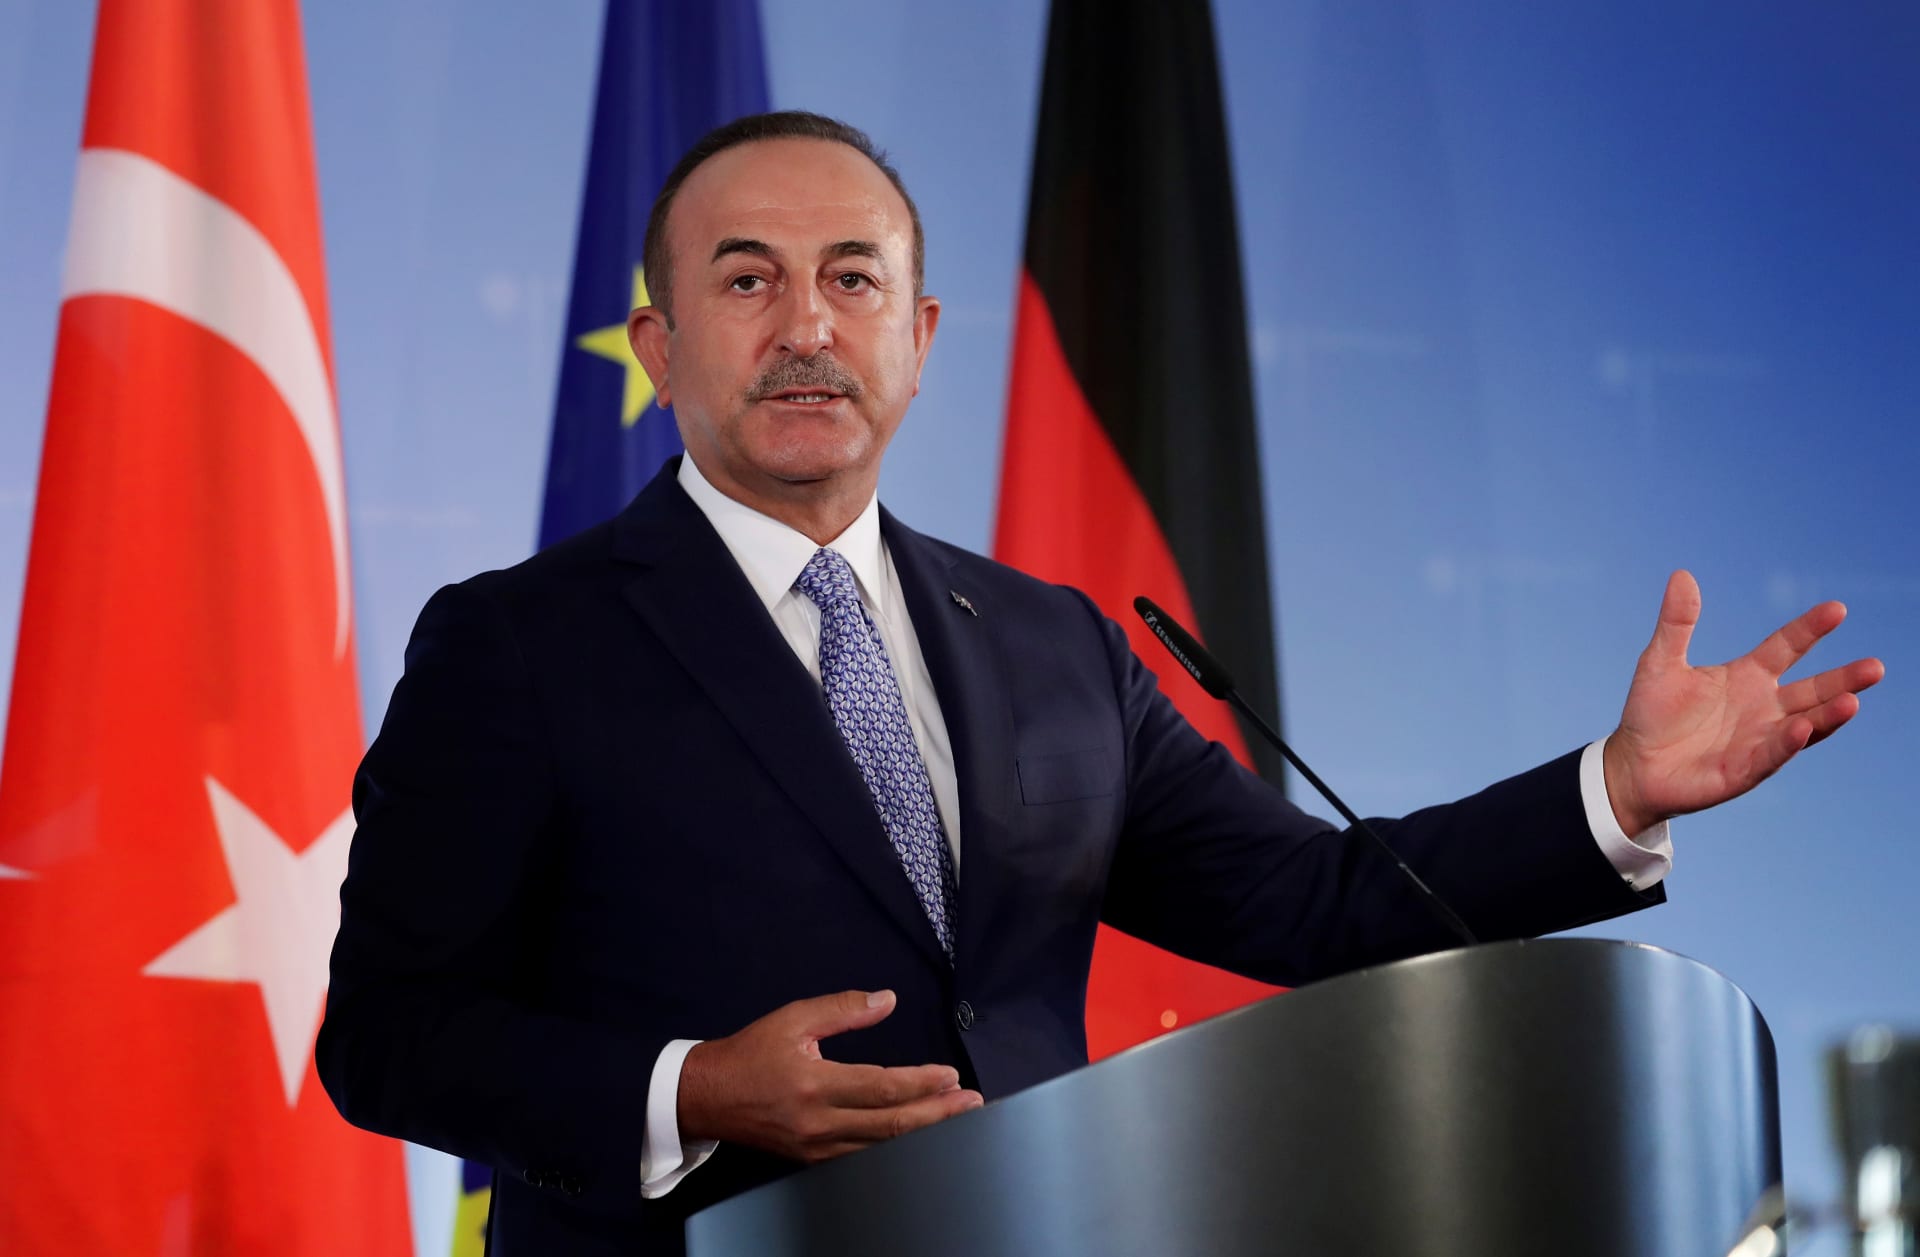 مصر ترد تصريحات وزير الخارجية التركي "السلبية" حول التطورات منذ "30 يونيو"